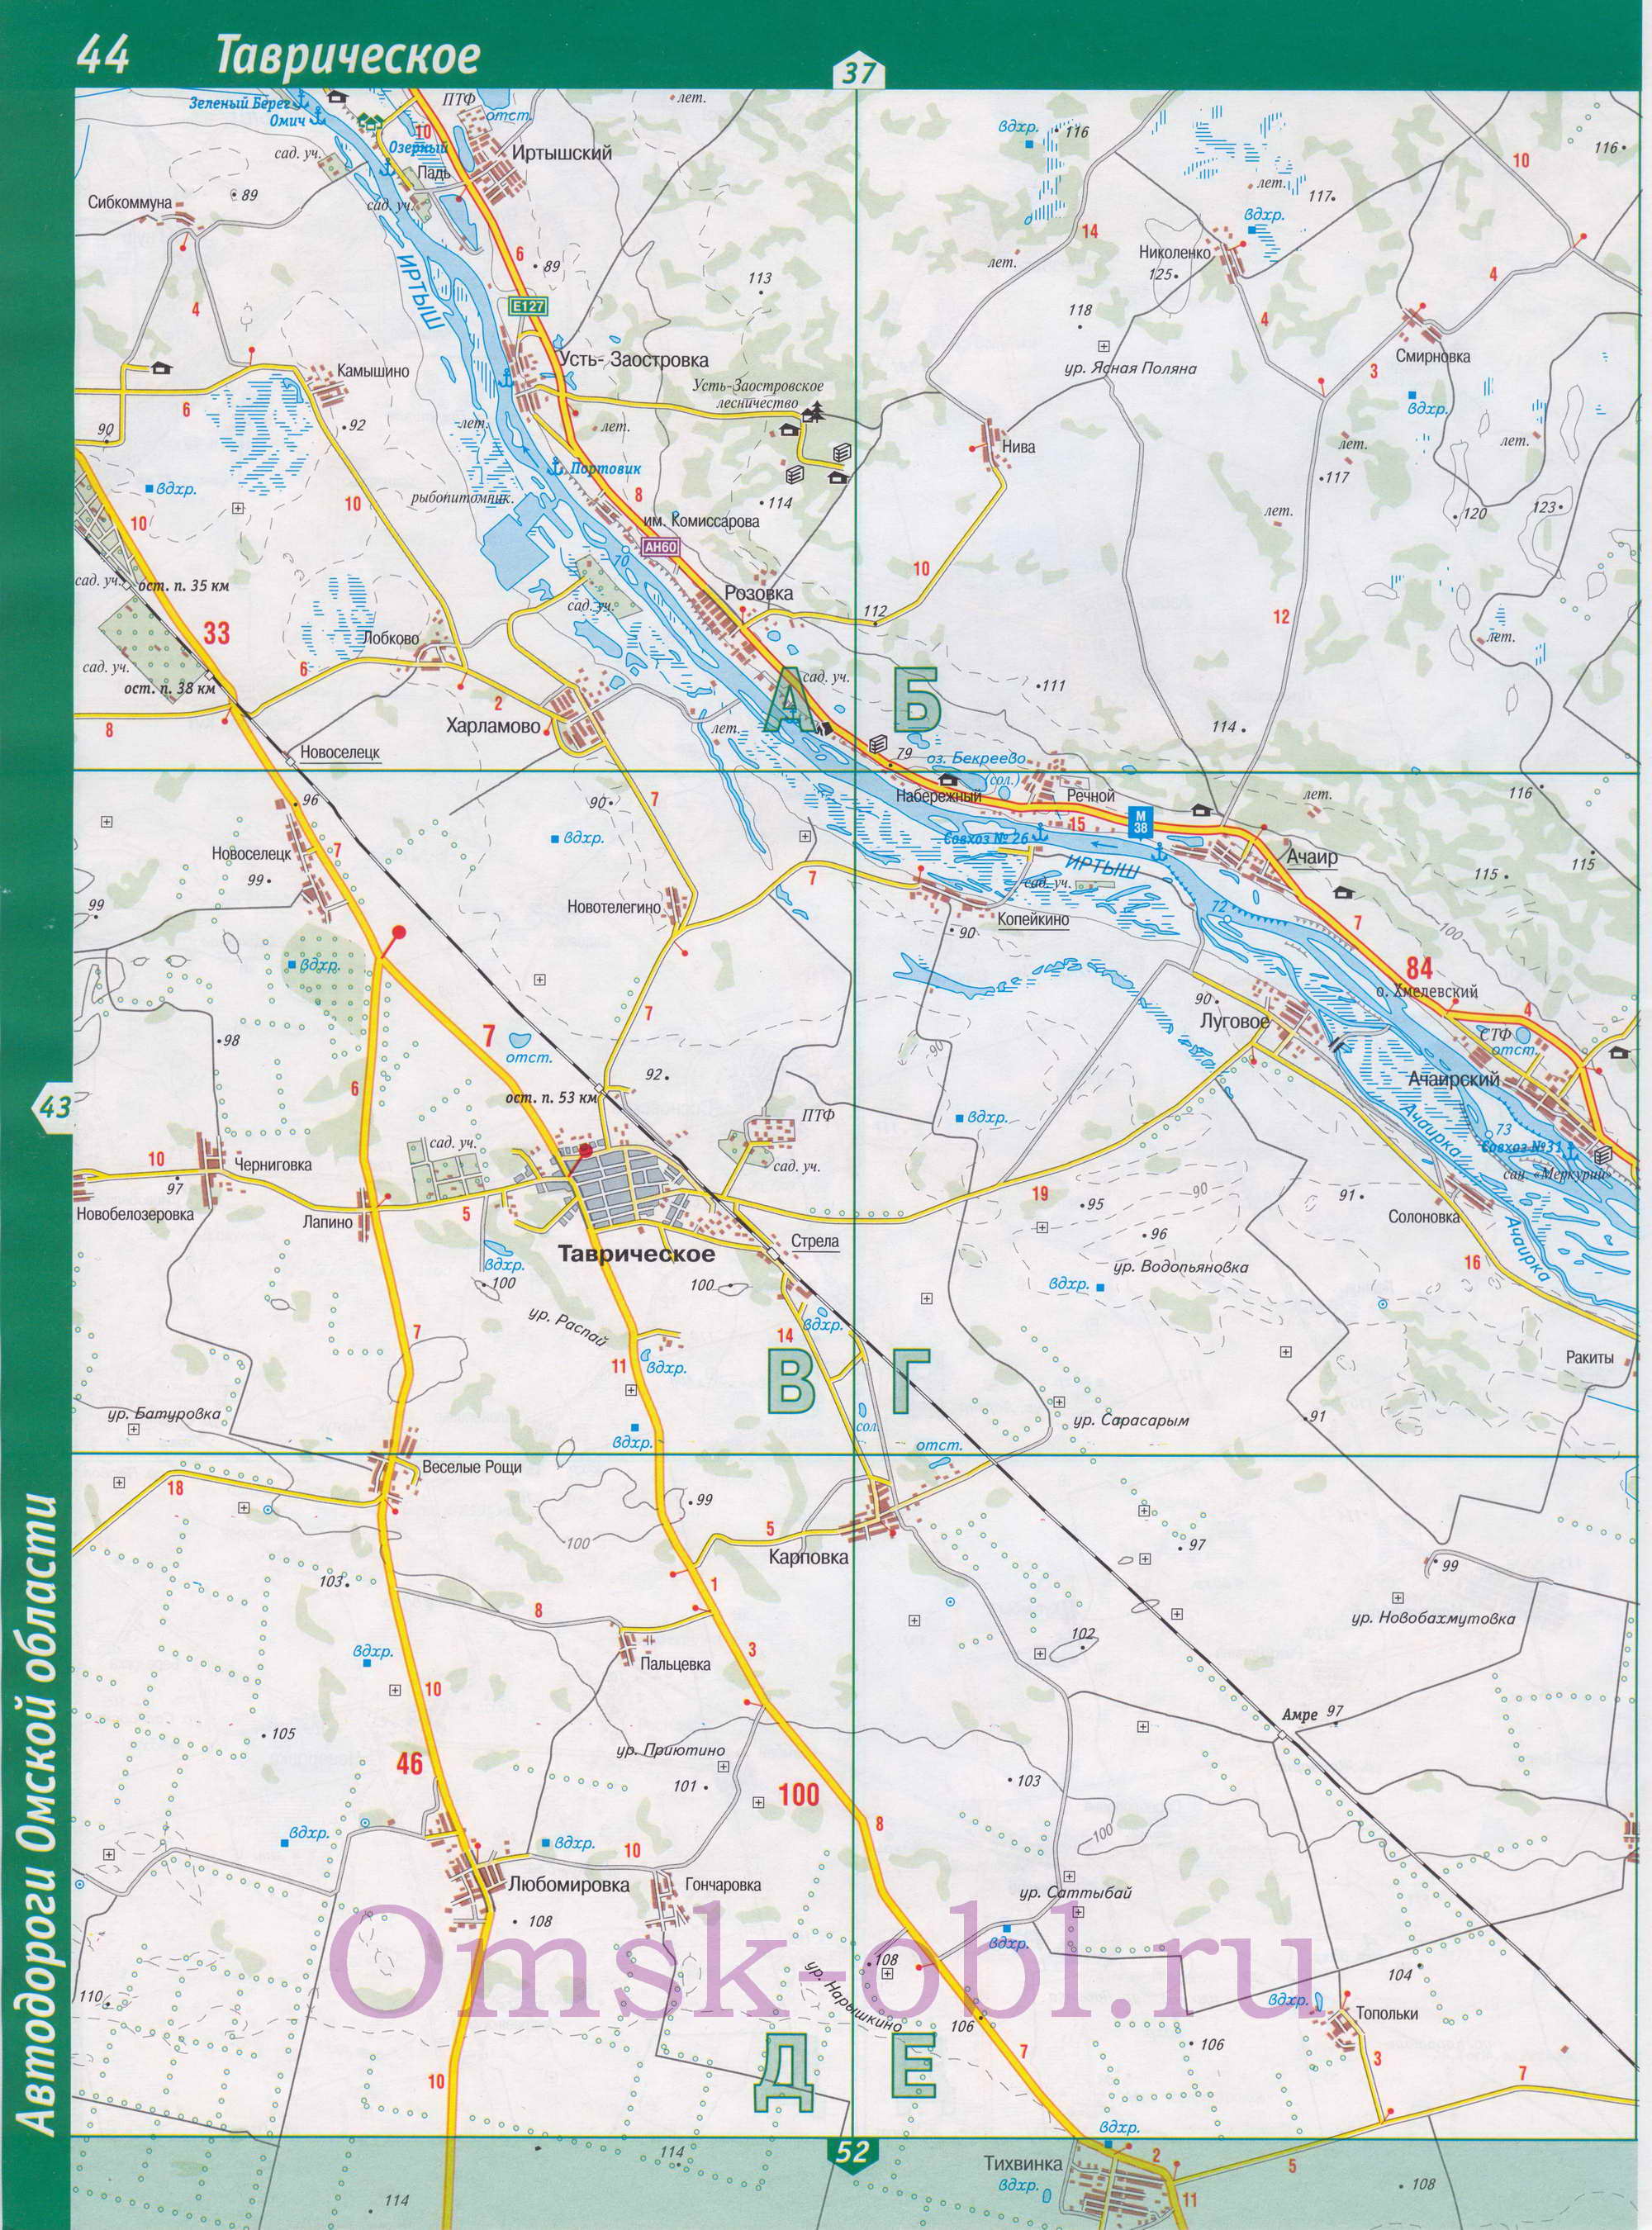 Карта Таврического района. Подробная карта Омской области - Таврический район, B0 - 